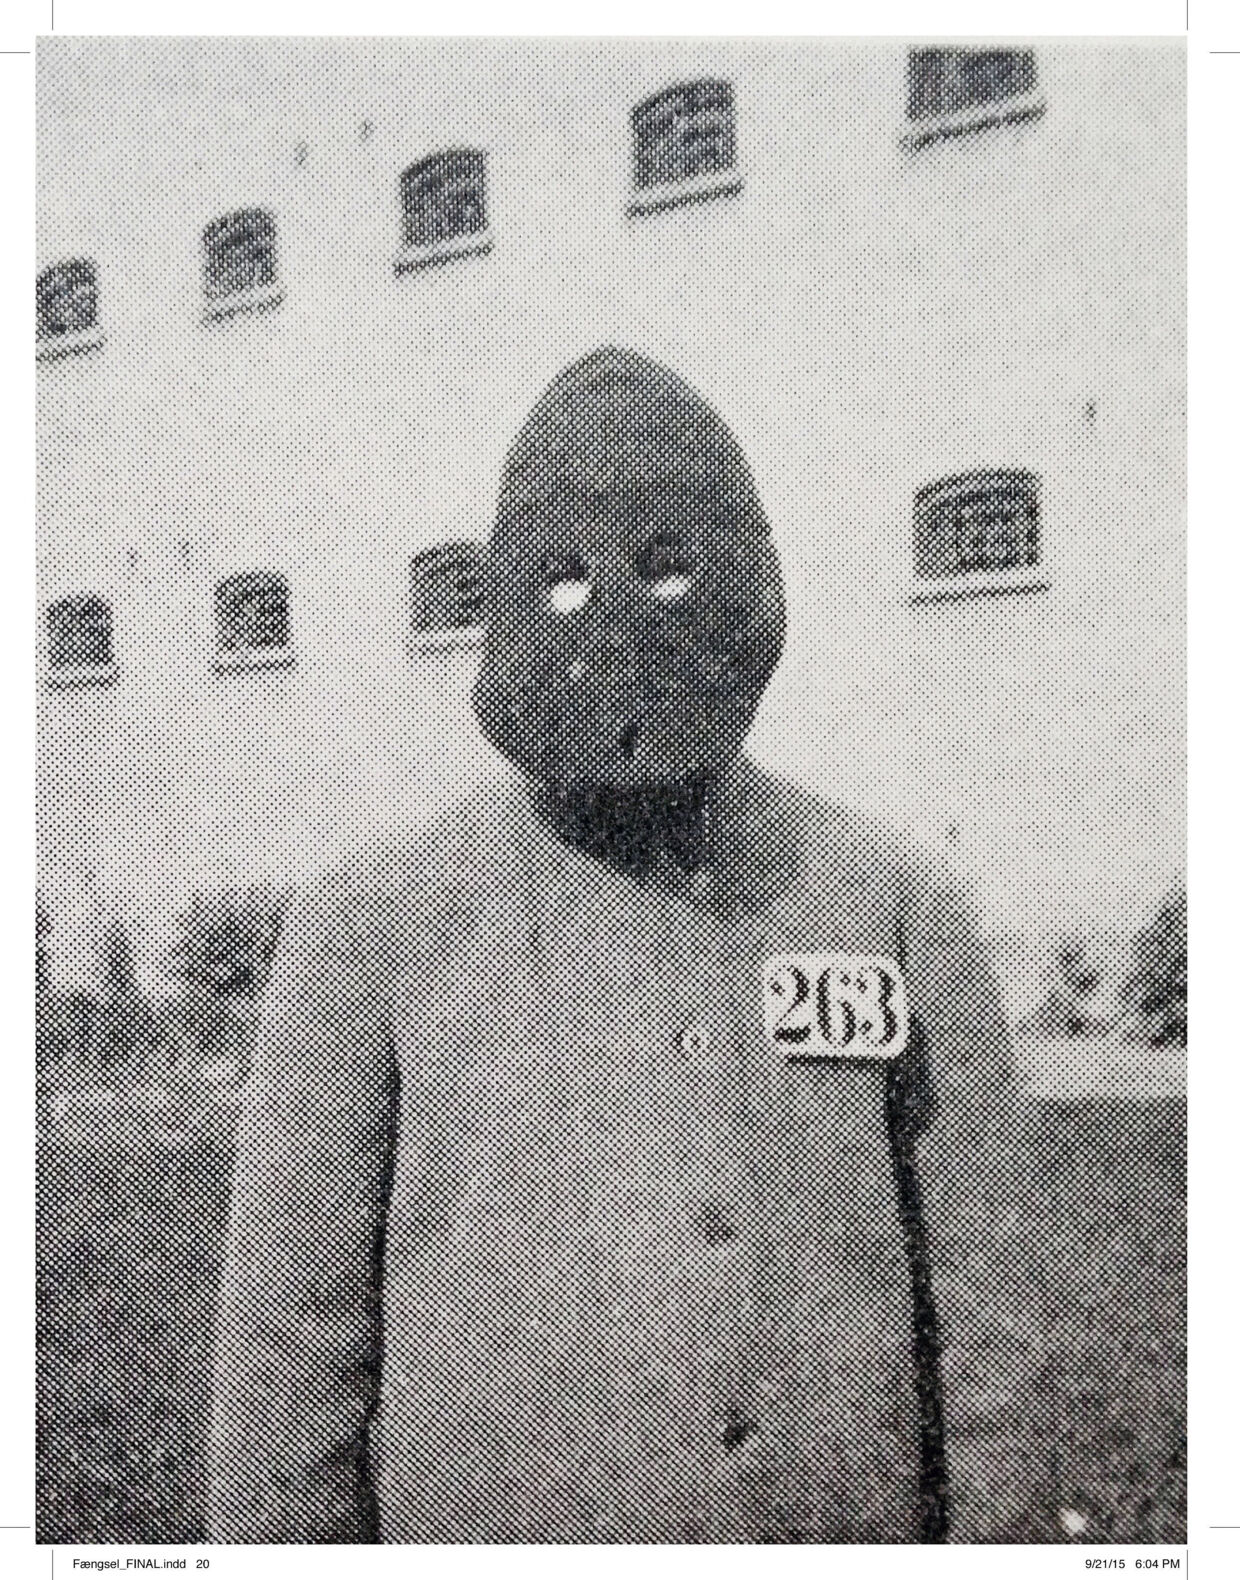 Under sin afsoning i Horsens valgte Peter Adler Alberti at bære maske, så ingen kunne se, hvem han var.